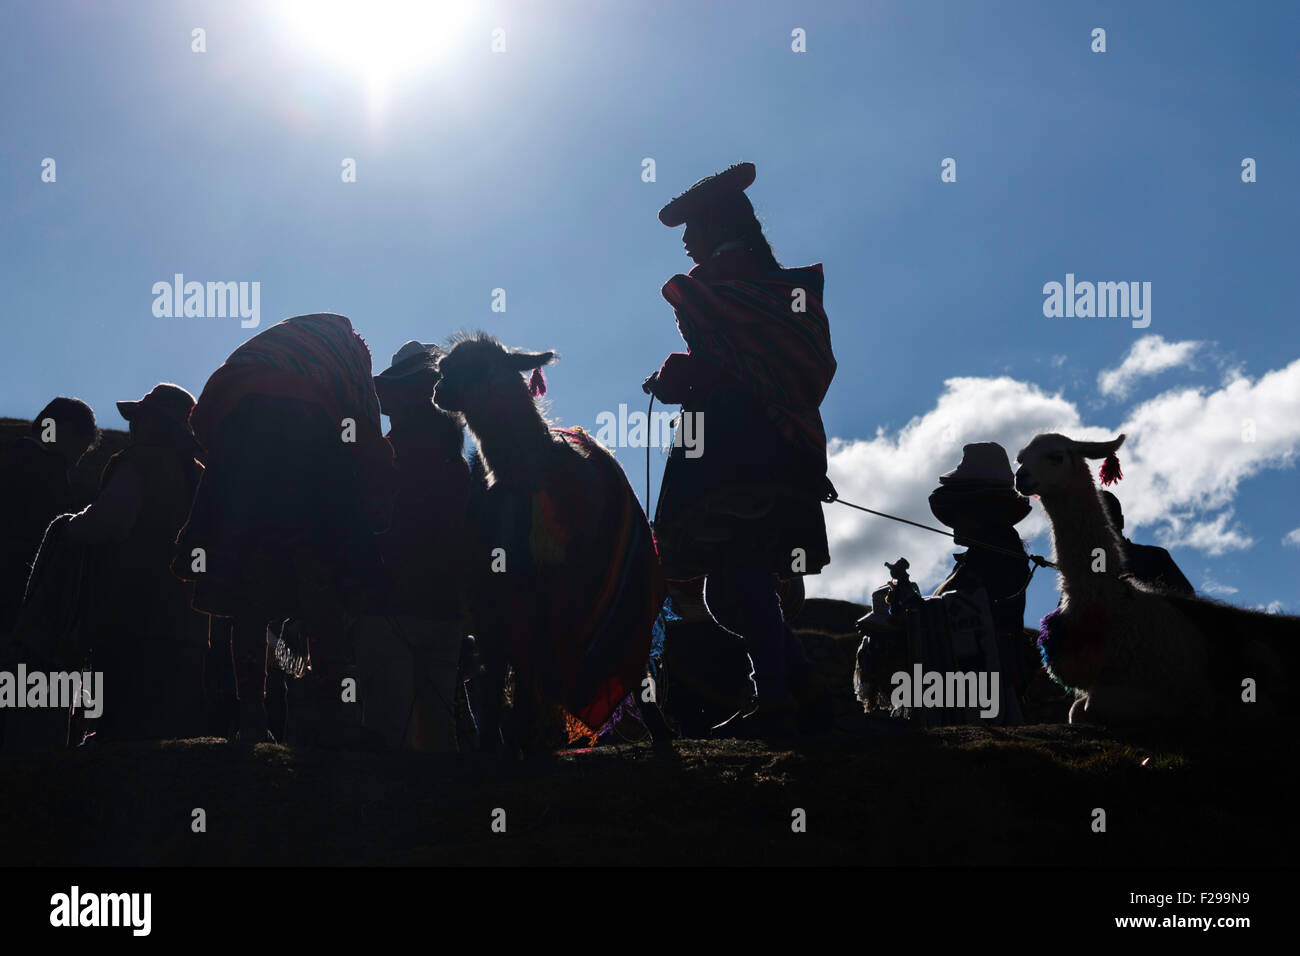 Saqsaywaman-Cuzco, Native women prepare their llamas to go to the city of Cuzco to work. Stock Photo